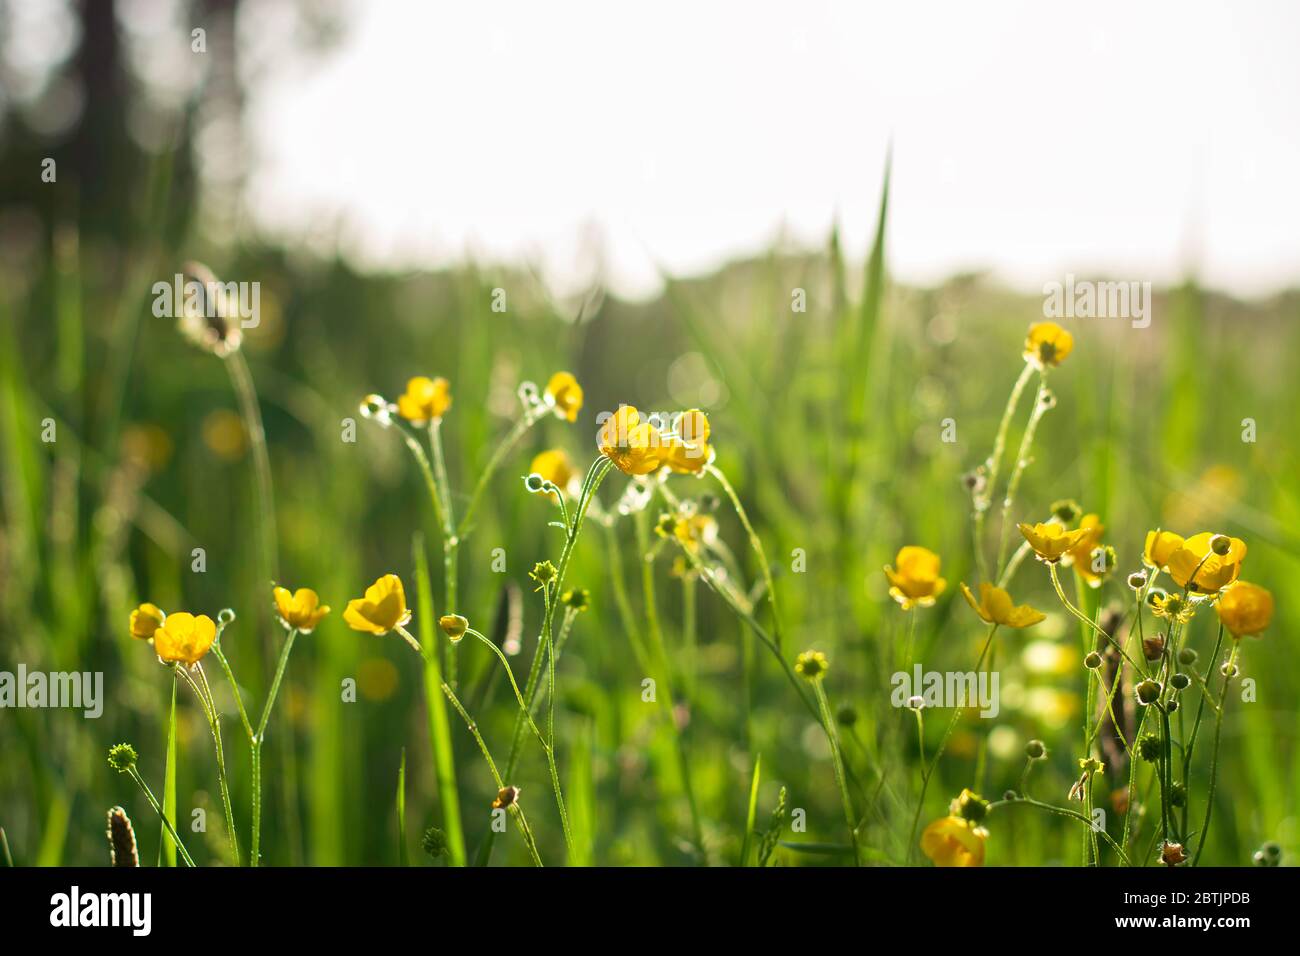 Point de vue bas niveau dans un pré de fleur de butterbutter jaune en fleur au soleil pendant l'heure d'or. Ranunculus fleurit dans un champ par une journée ensoleillée. Banque D'Images